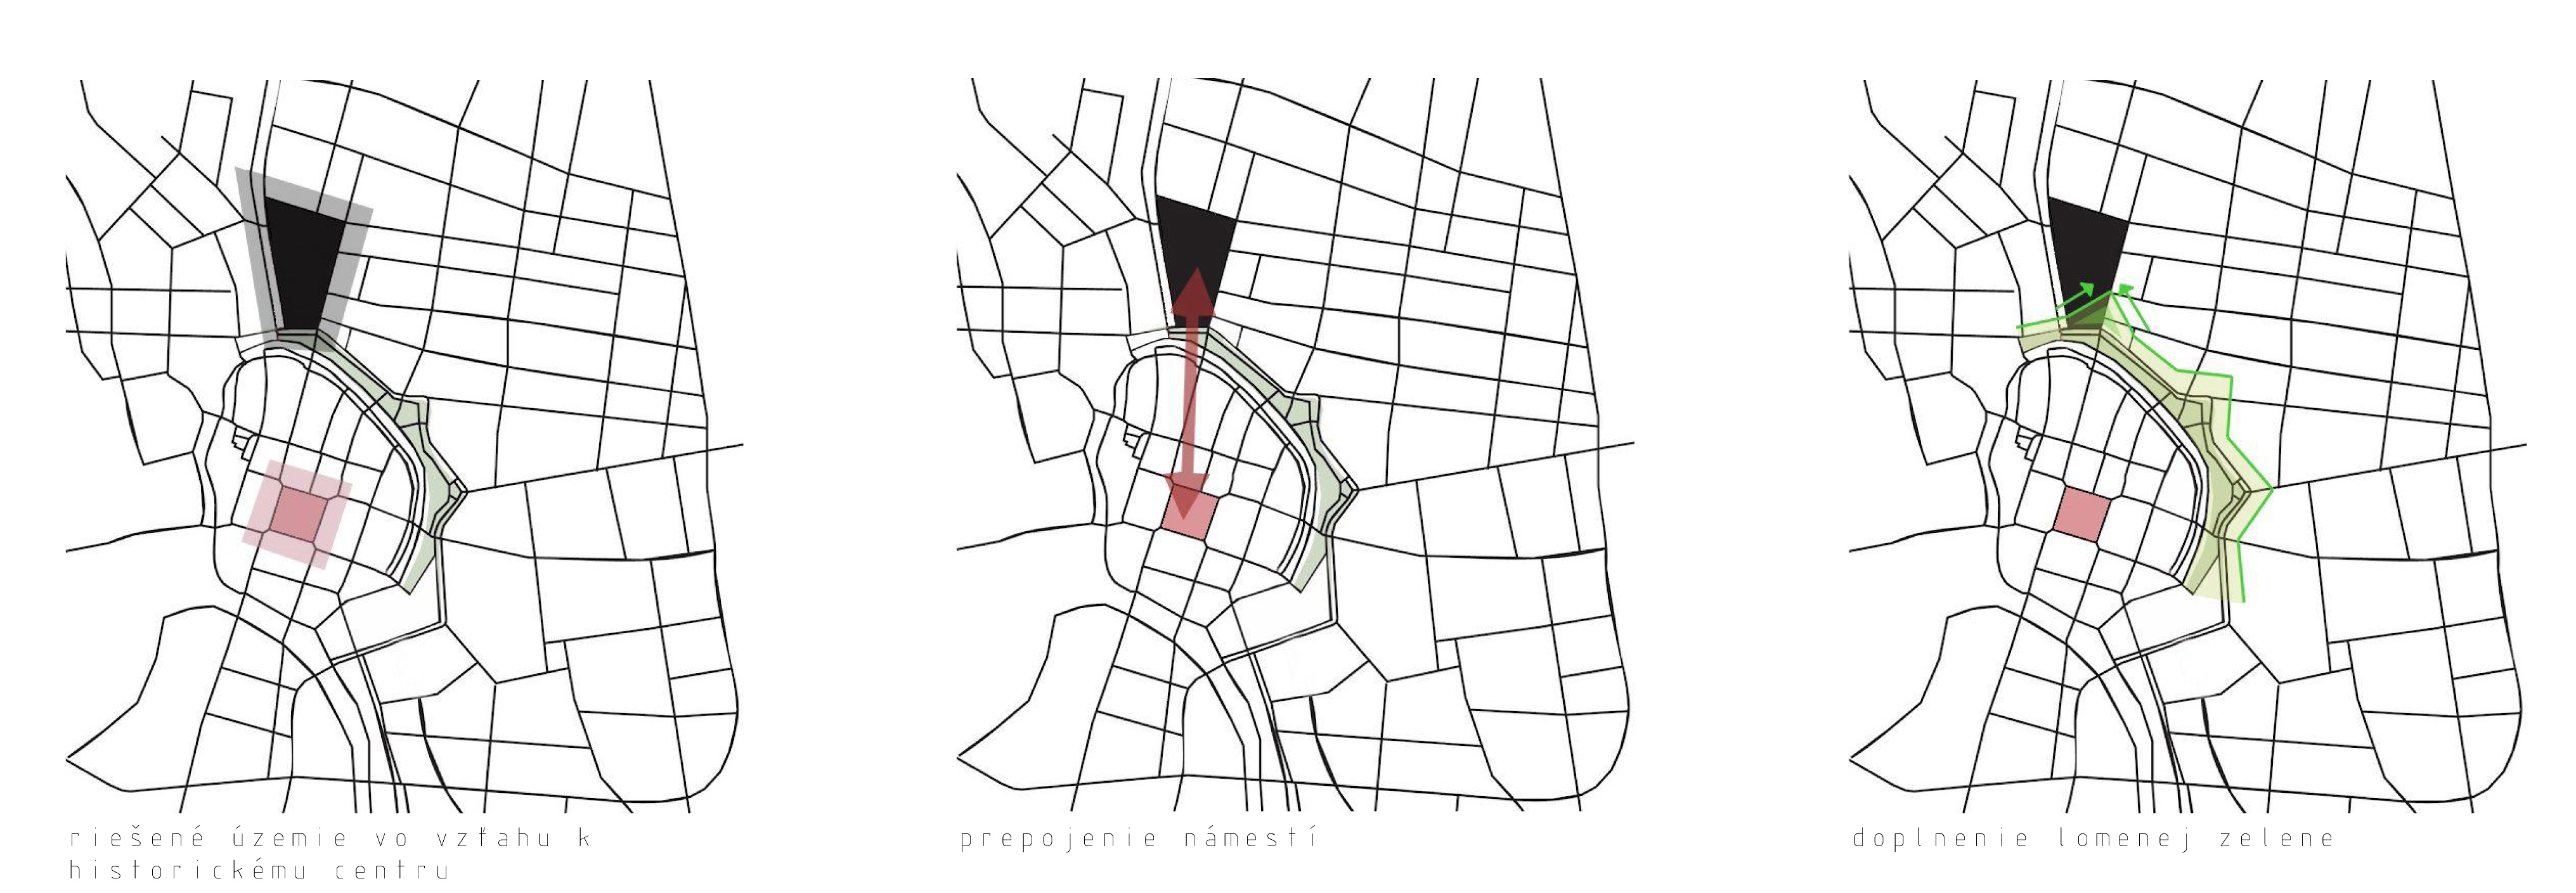 Riešené územie vo vzťahu k historickému centru -  prepojenie námestí - doplnenie geometricky lomenej zelene,.